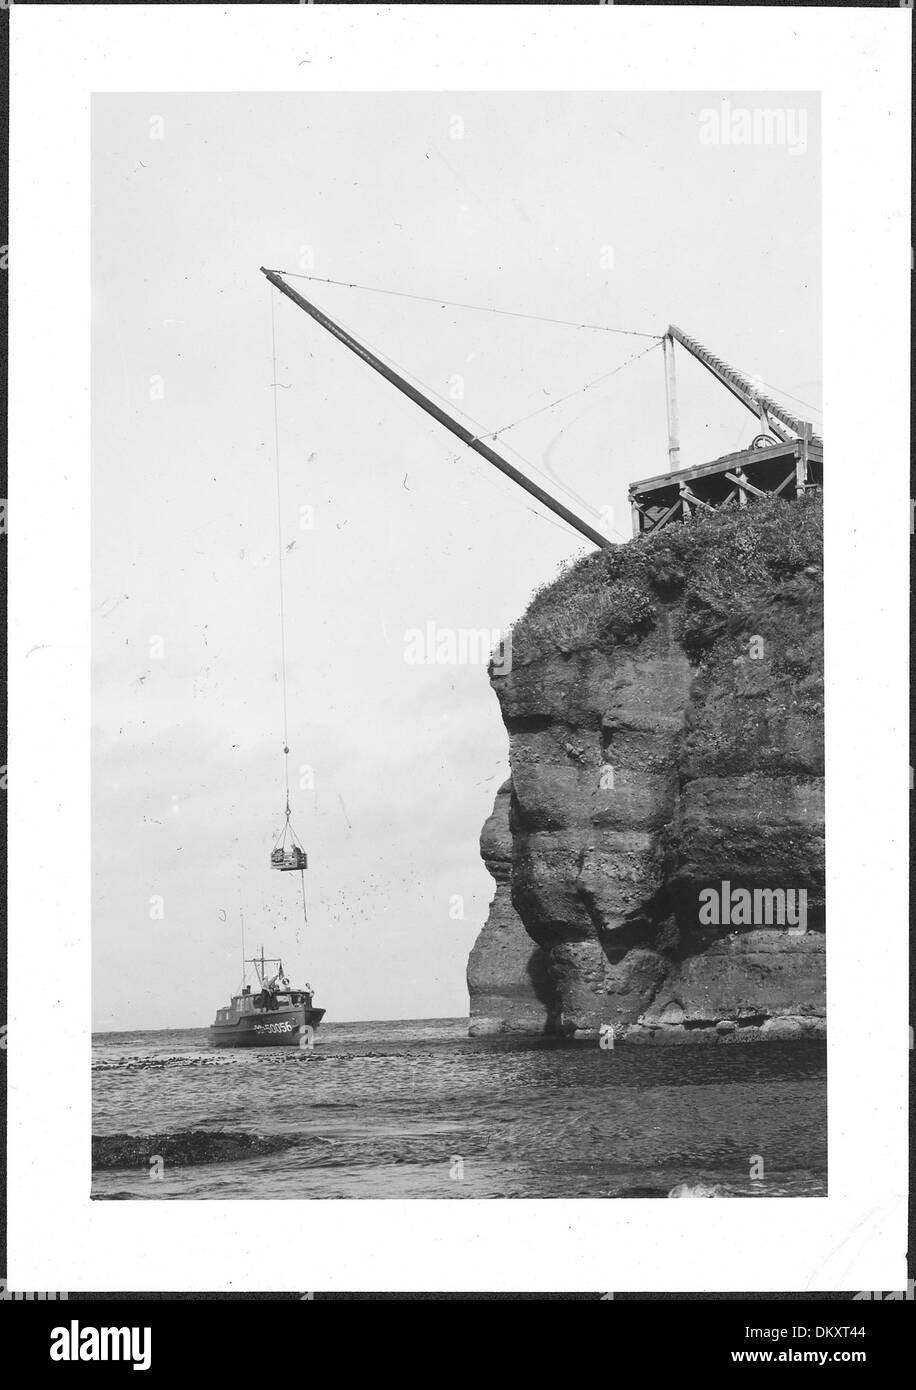 "El único método de elevación - ir a bordo.' la adulación del Cabo Lightstation, 1943., ca. 1943 - ca. 1953 298190 Foto de stock